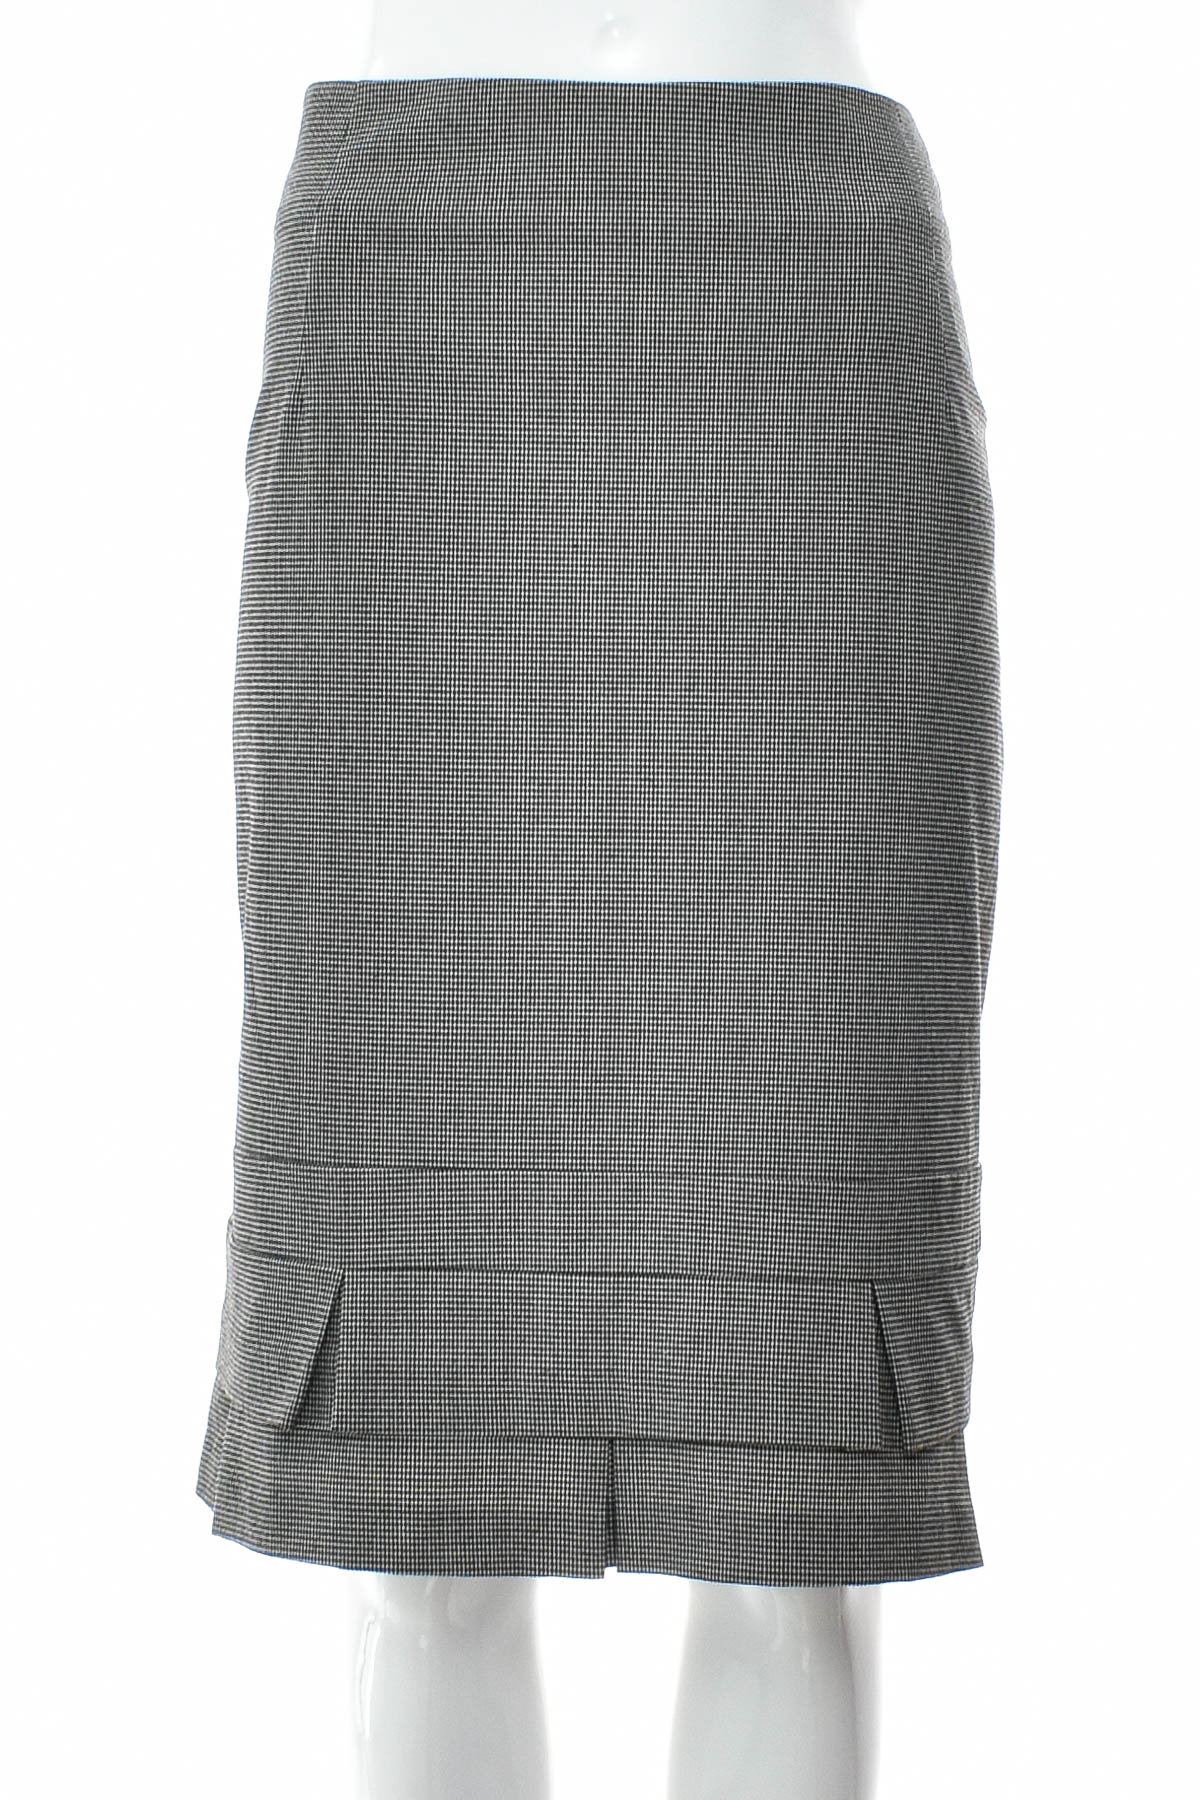 Skirt - Veronika Maine - 0